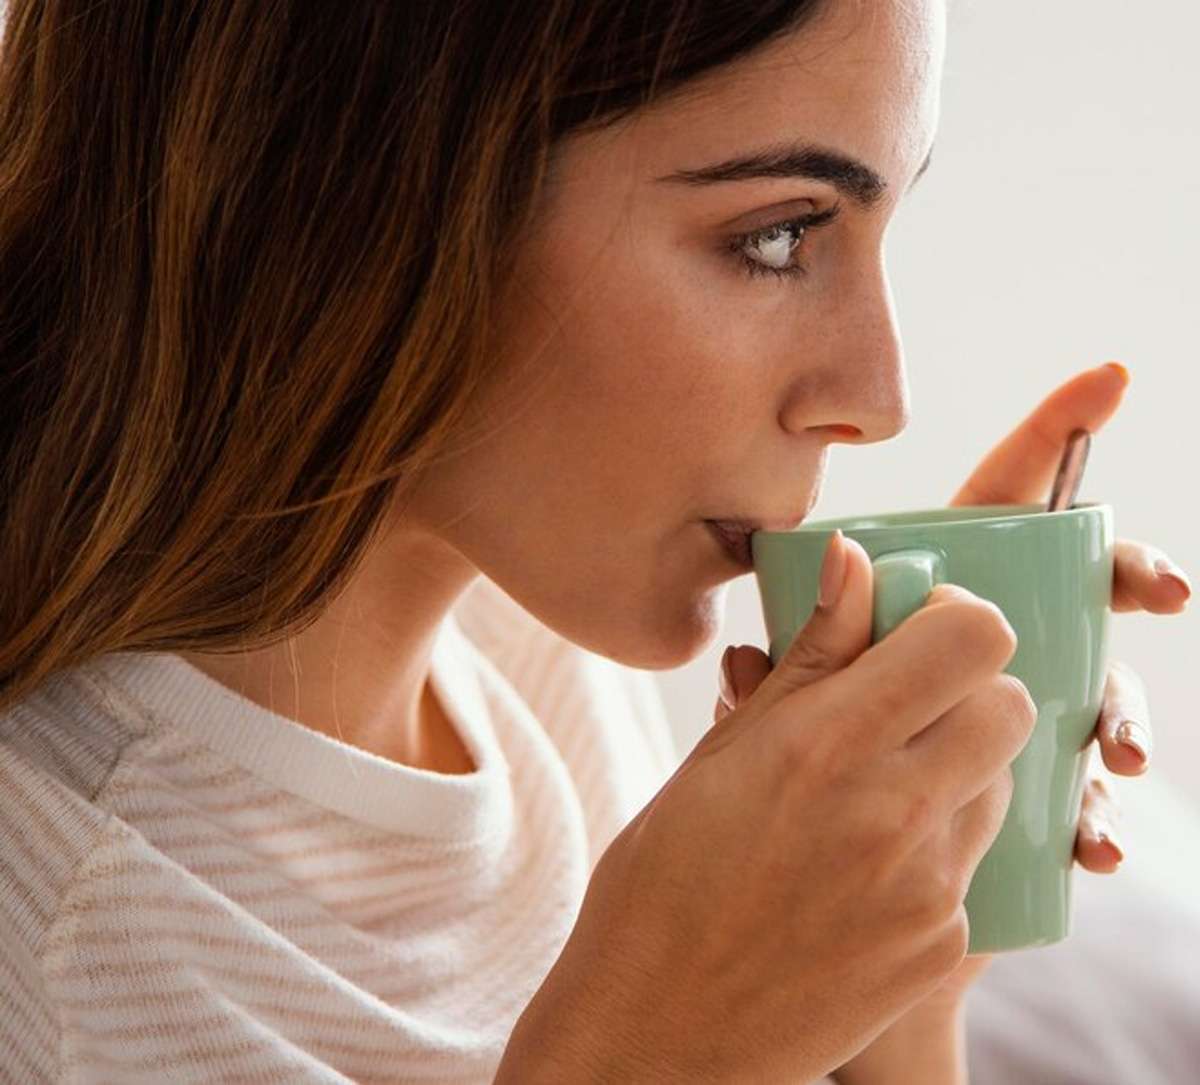 Weight loss और कई बीमारियों में रामबाण है यह चाय, देखिए मिलने वाले फायदों की लिस्ट